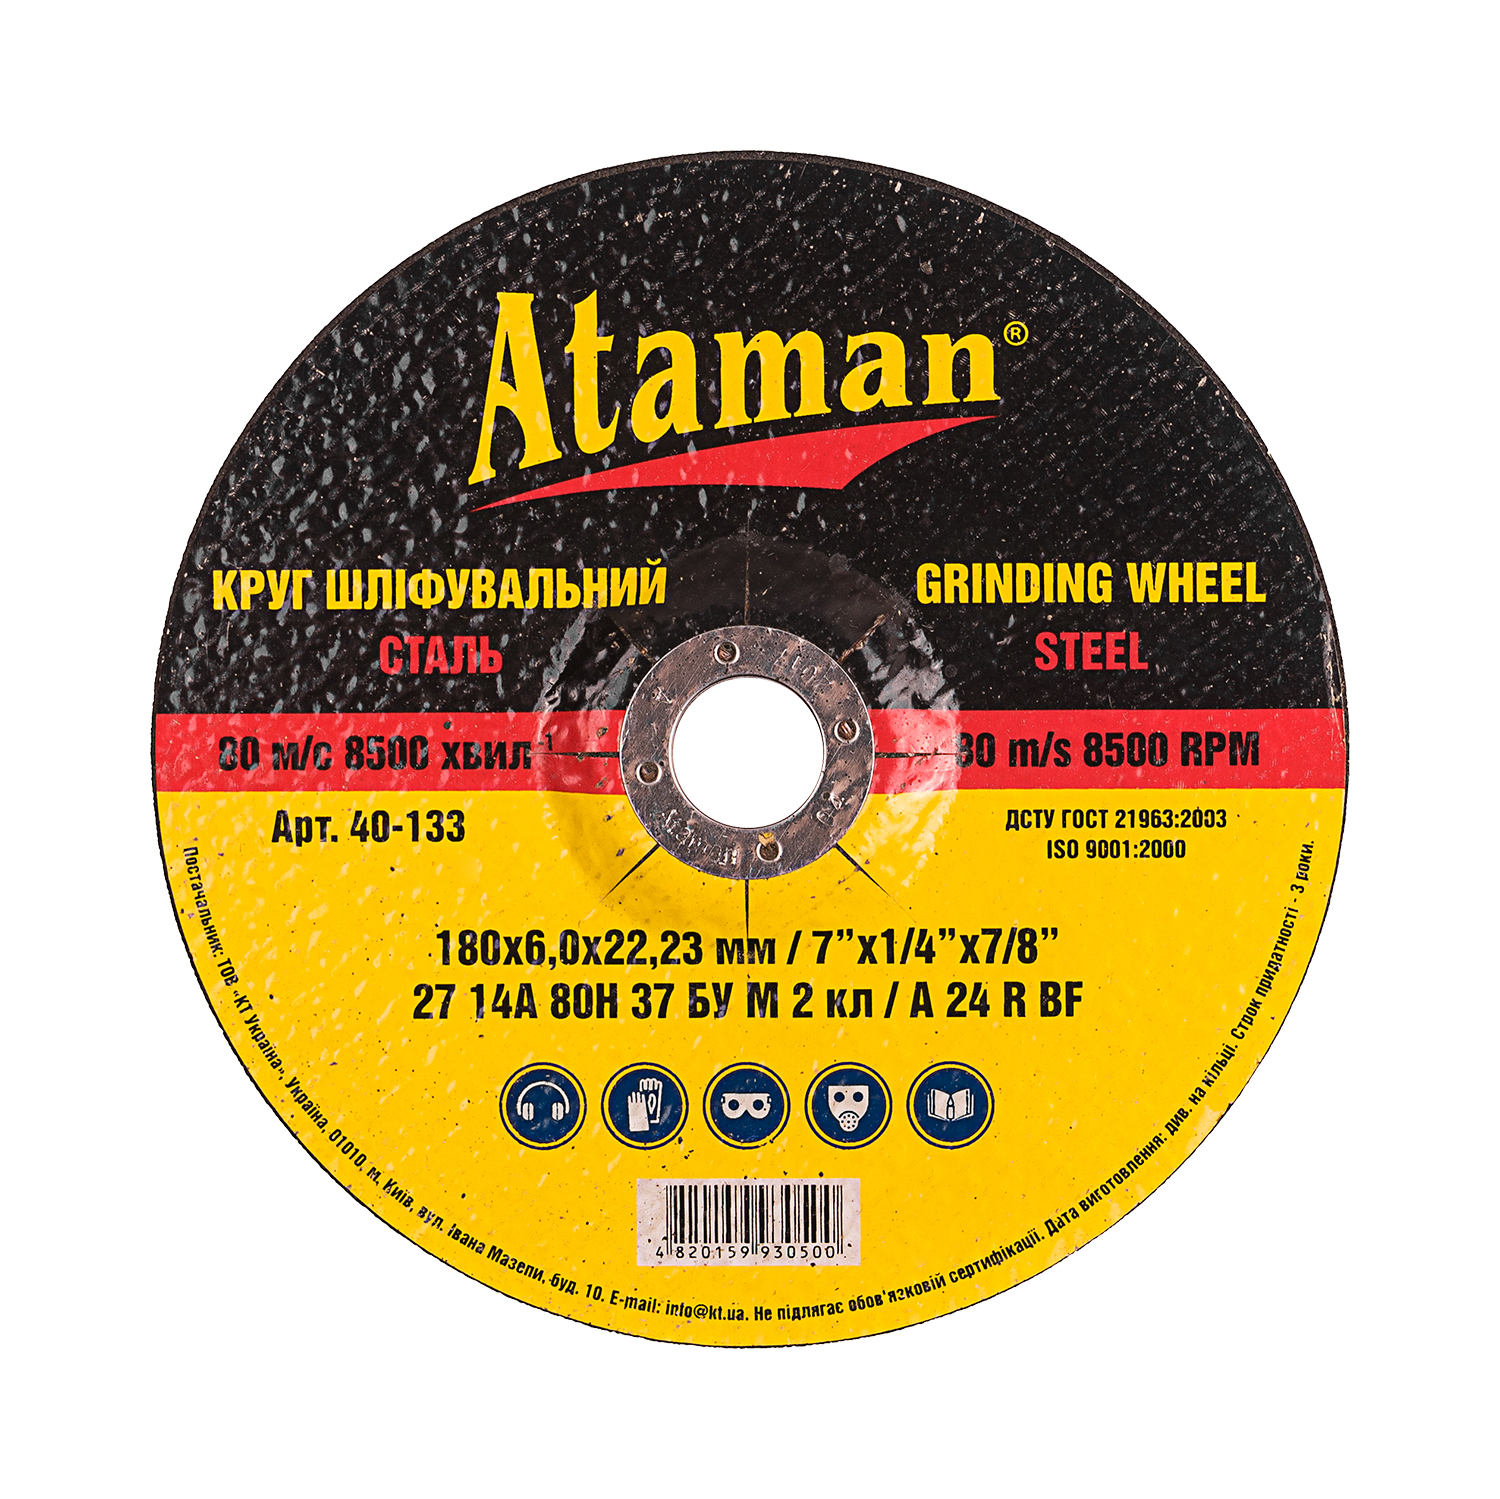 Grindings wheel for metal Ataman 27 14А 180х6.0х22.23